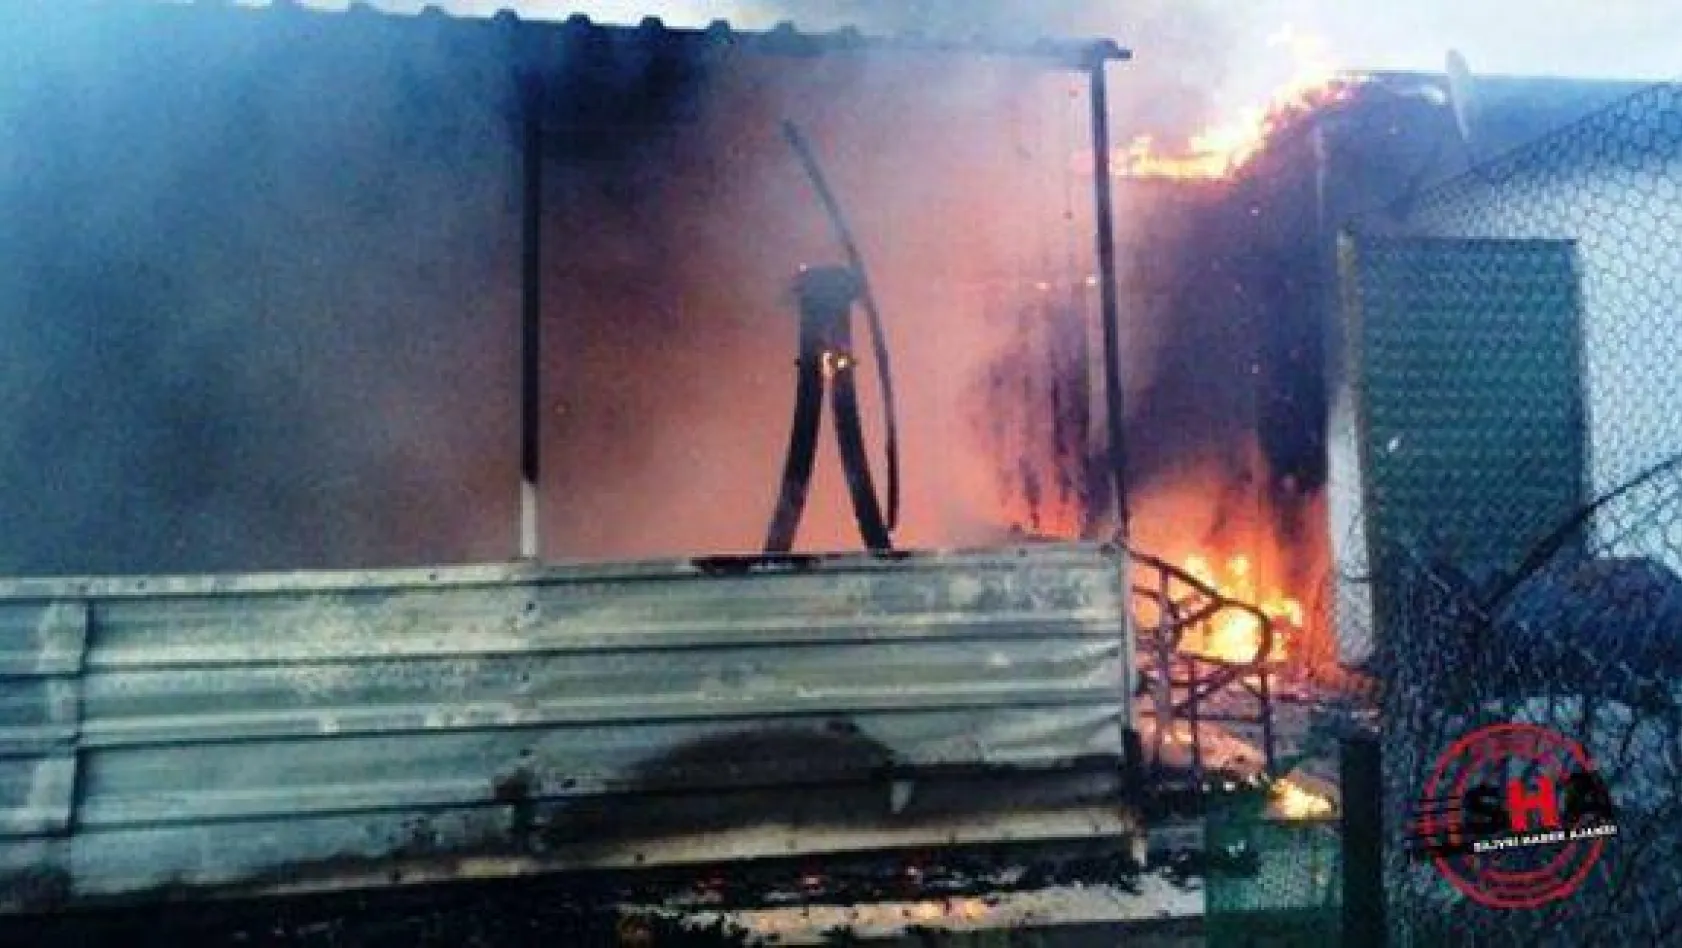 Selimpaşa 'da Baraka Yangını